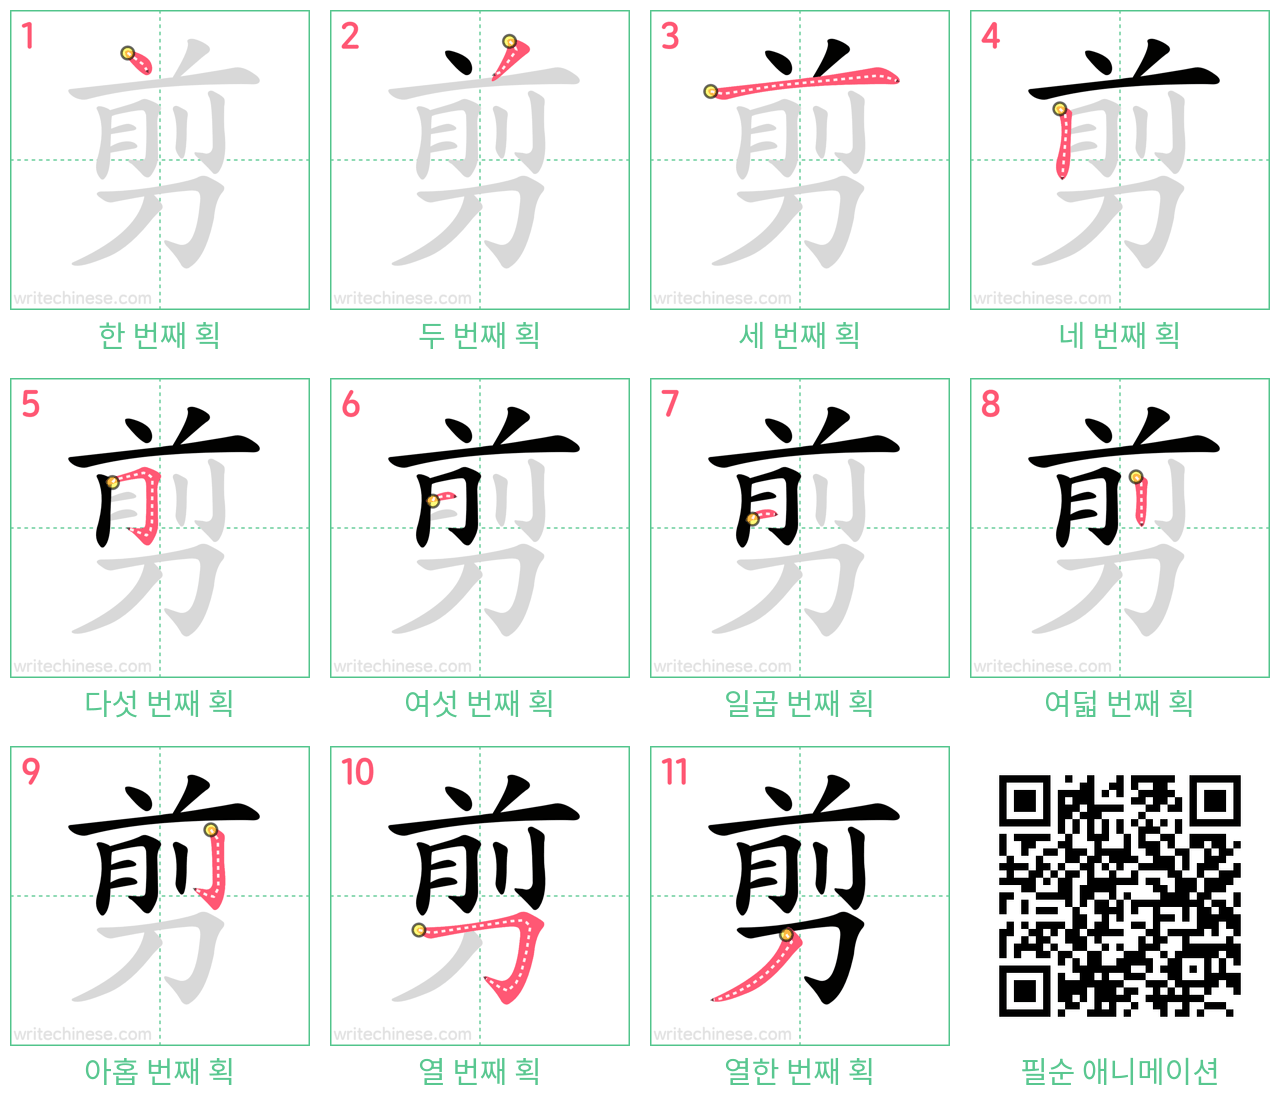 剪 step-by-step stroke order diagrams